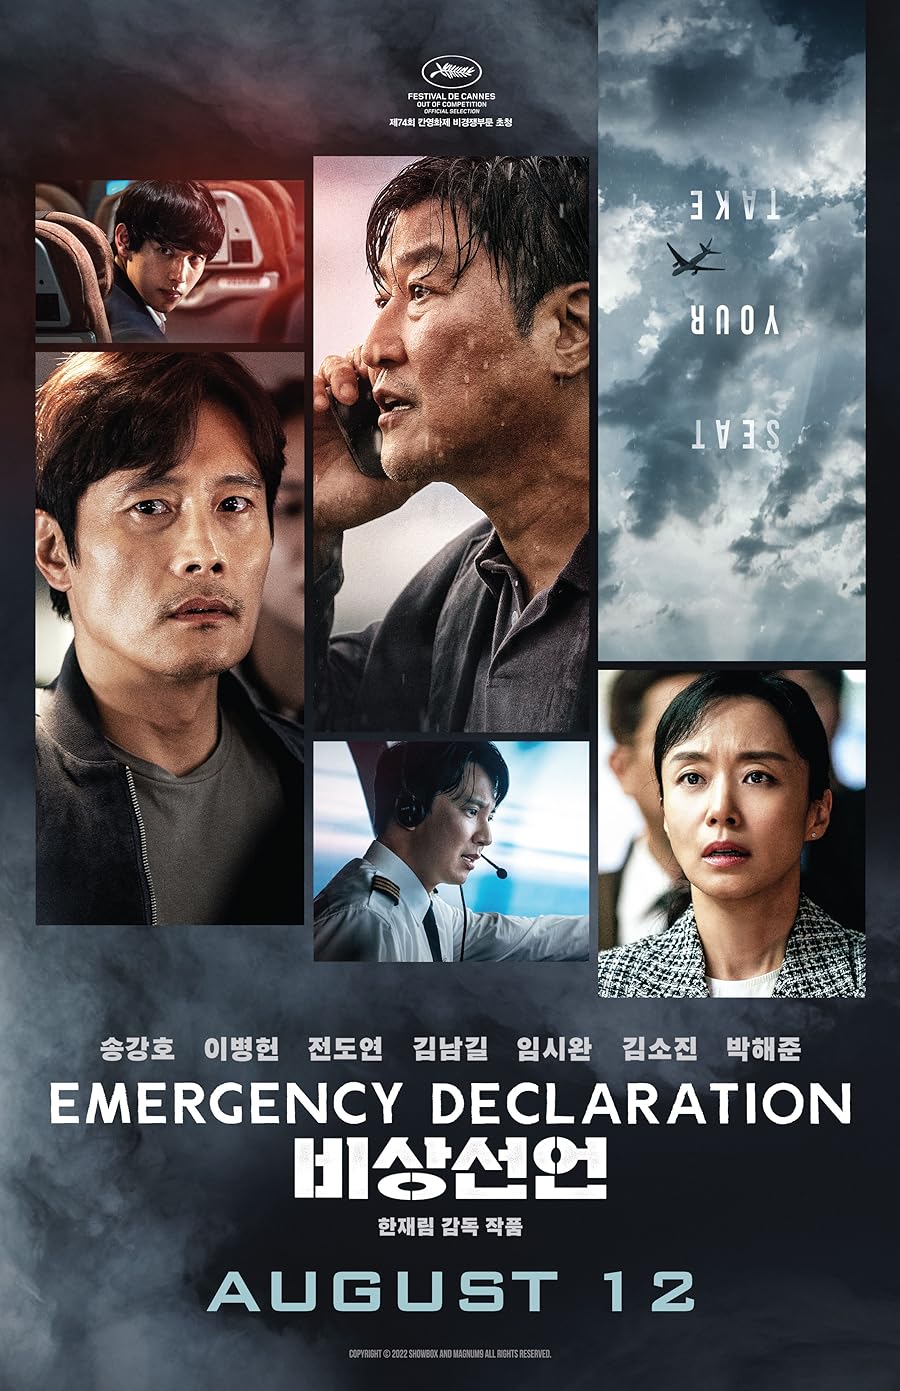 دانلود فیلم Emergency Declaration 2021